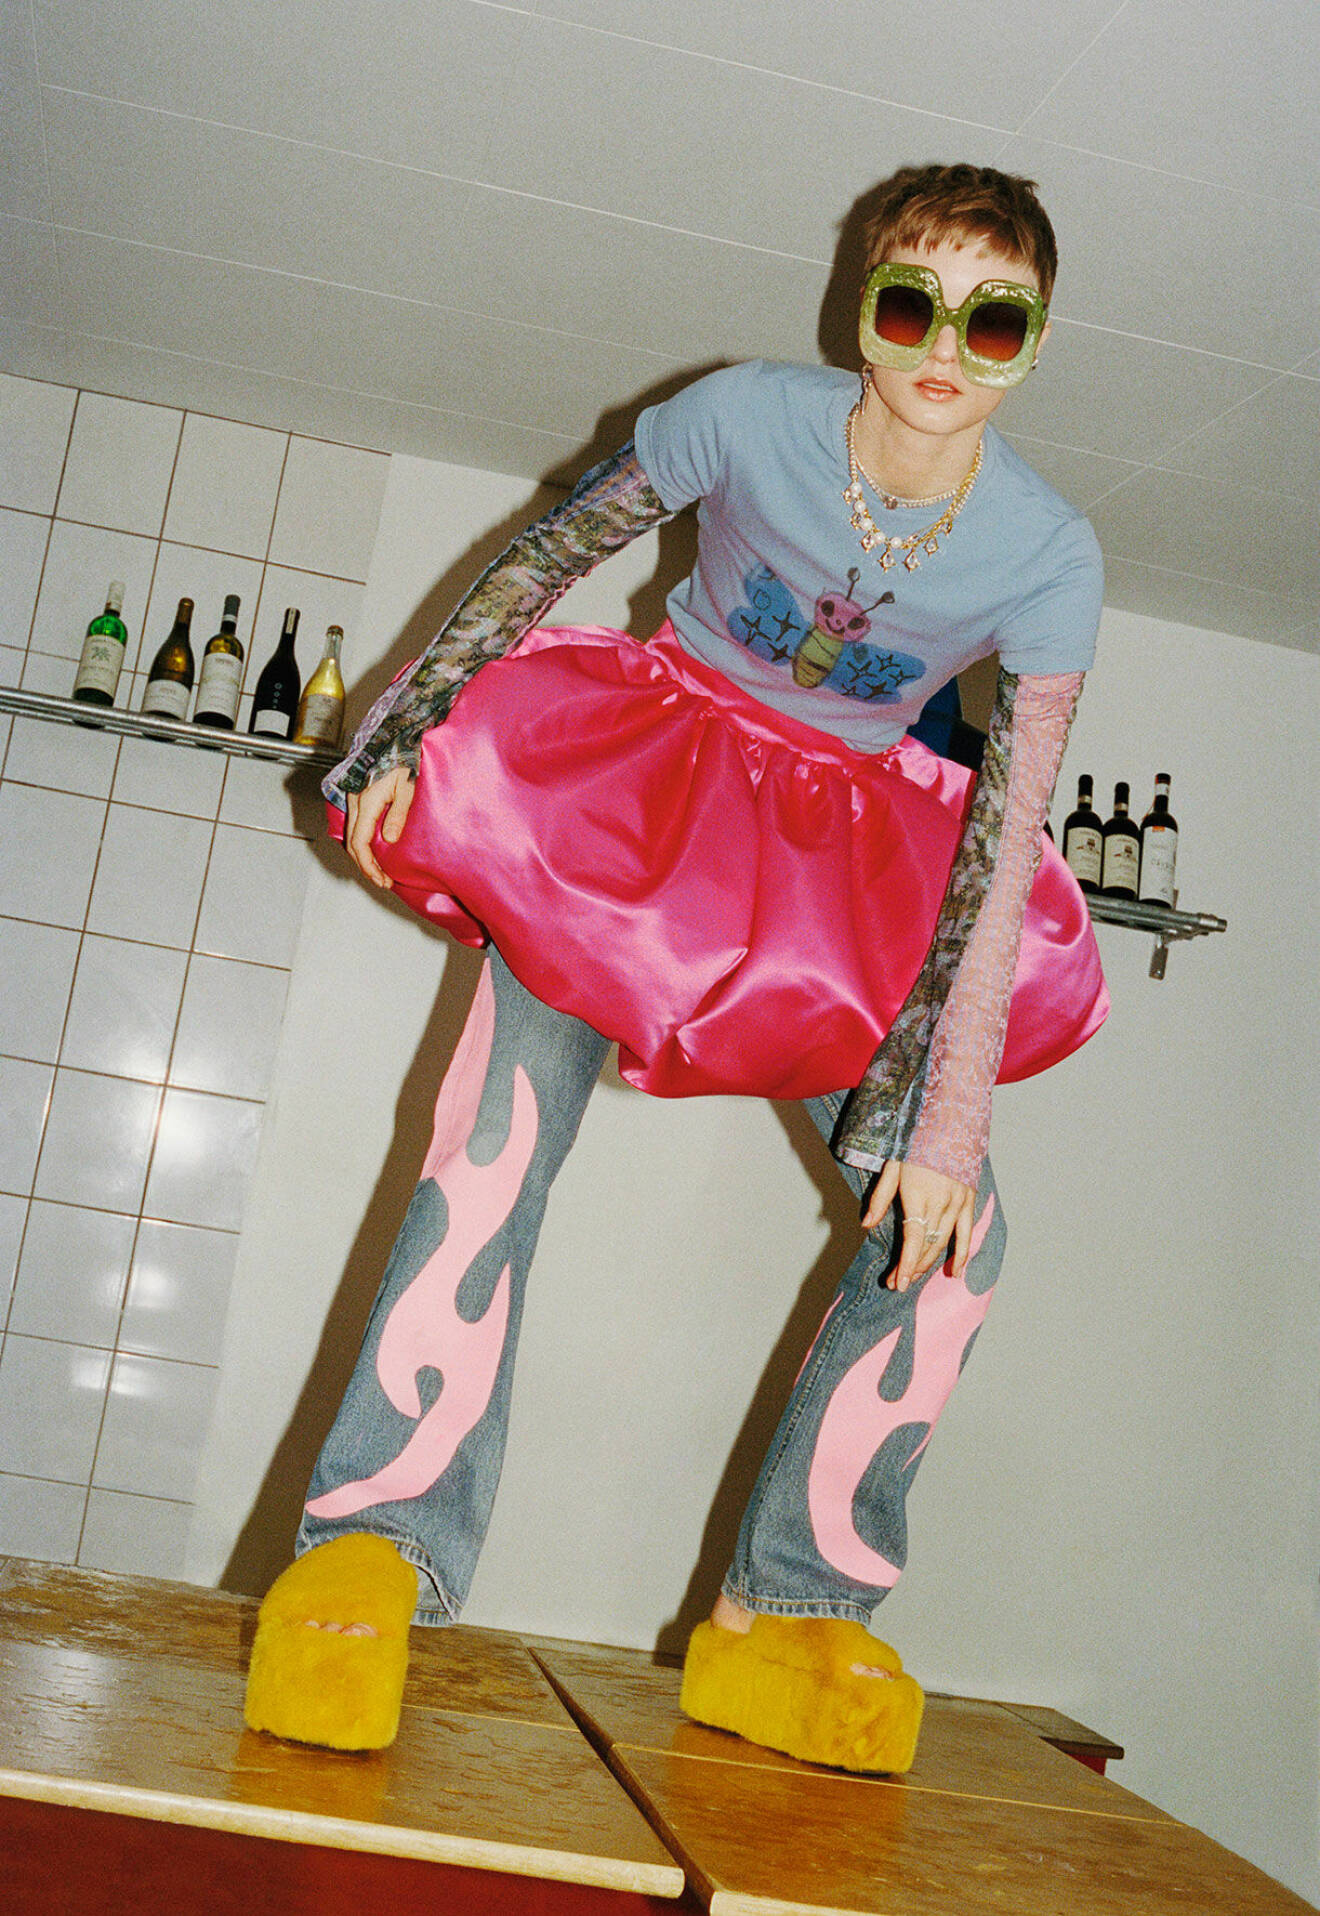 Modellen står på ett bord, hon har på sig en rosa kjol, mönstrade jeans och en t-shirt med tryck